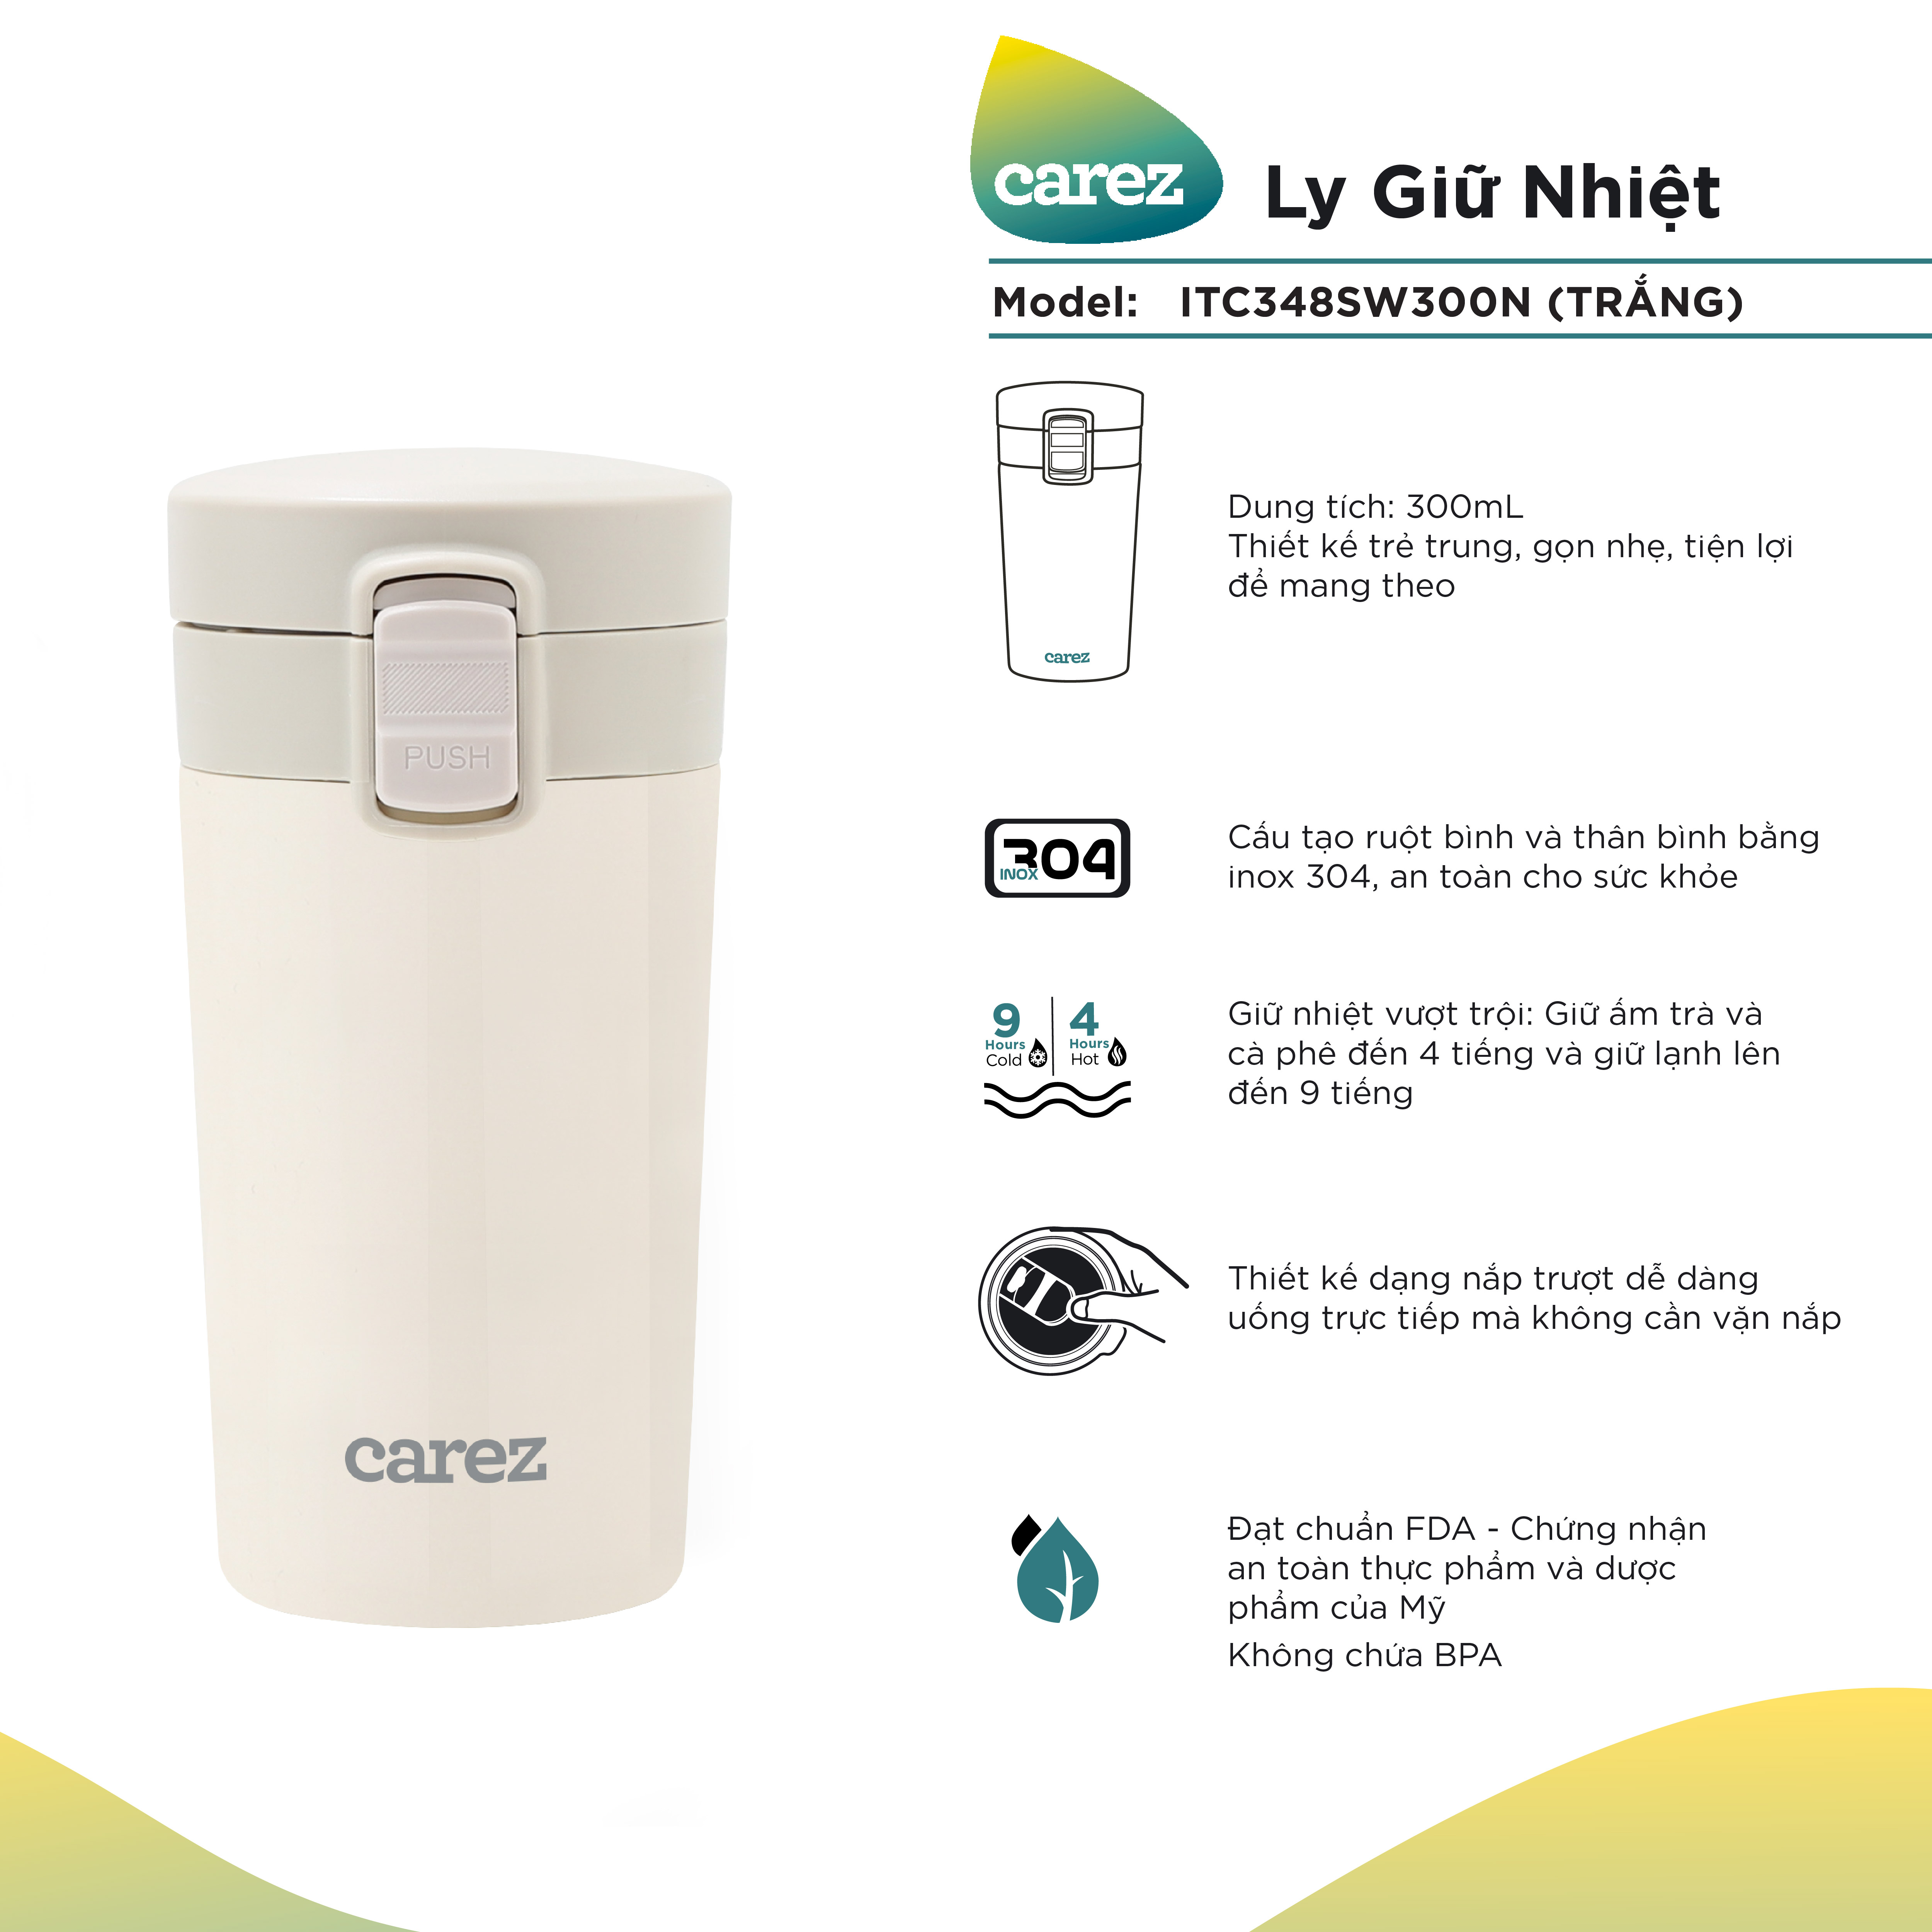 Ly Giữ Nhiệt Carez ITC348SW300N -TRẮNG- 300ml, Inox 304, Không chứa BPA - Giữ nóng đến 8 tiếng, giữ lạnh đến 12 tiếng - Hàng chính hãng